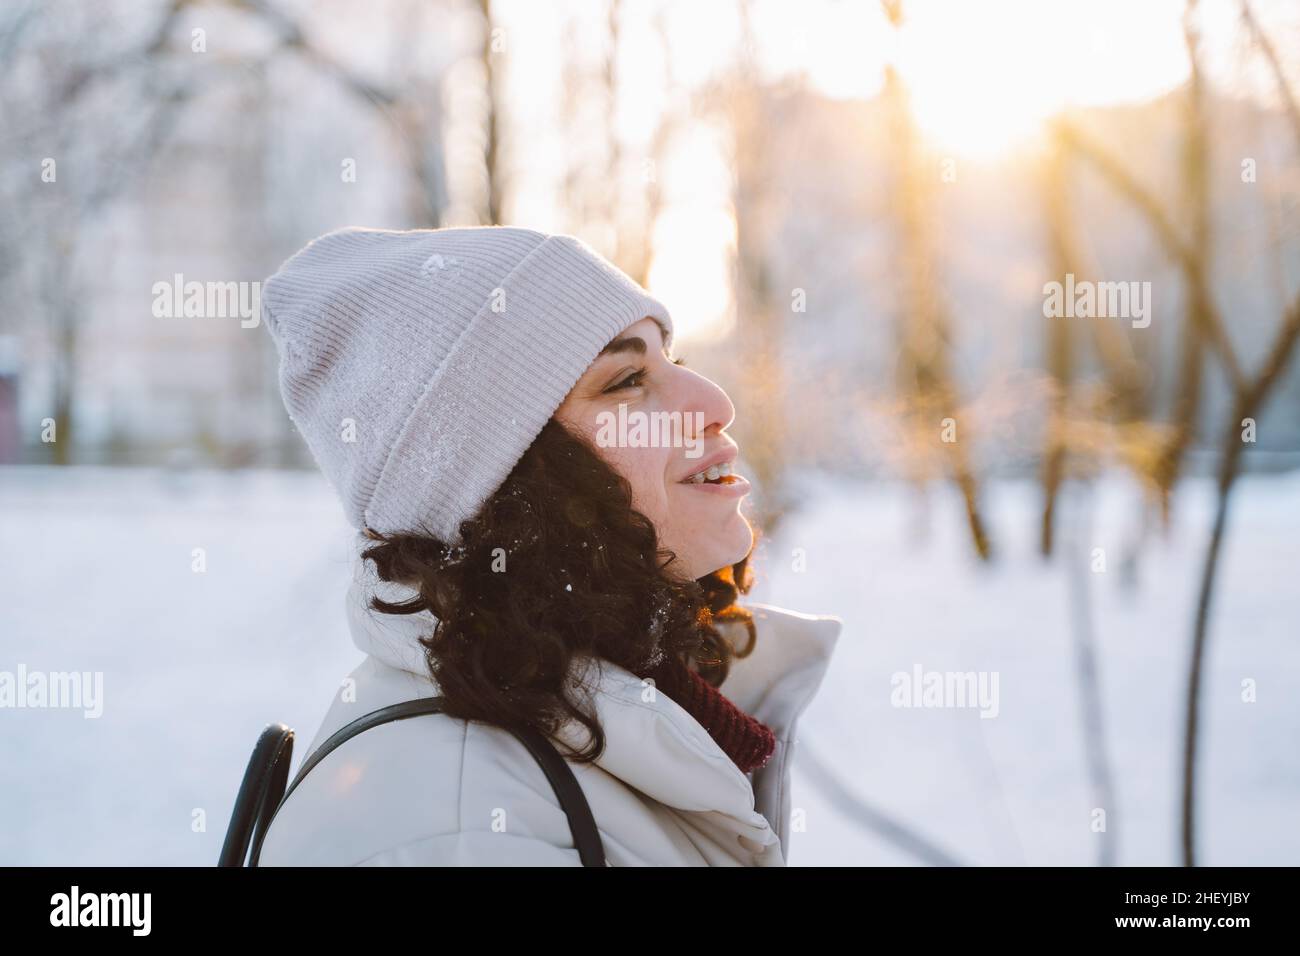 Une jeune femme brunette aux cheveux bouclés marche en hiver dans la rue respire de l'air givré avec de la vapeur de sa bouche.Vue latérale. Banque D'Images